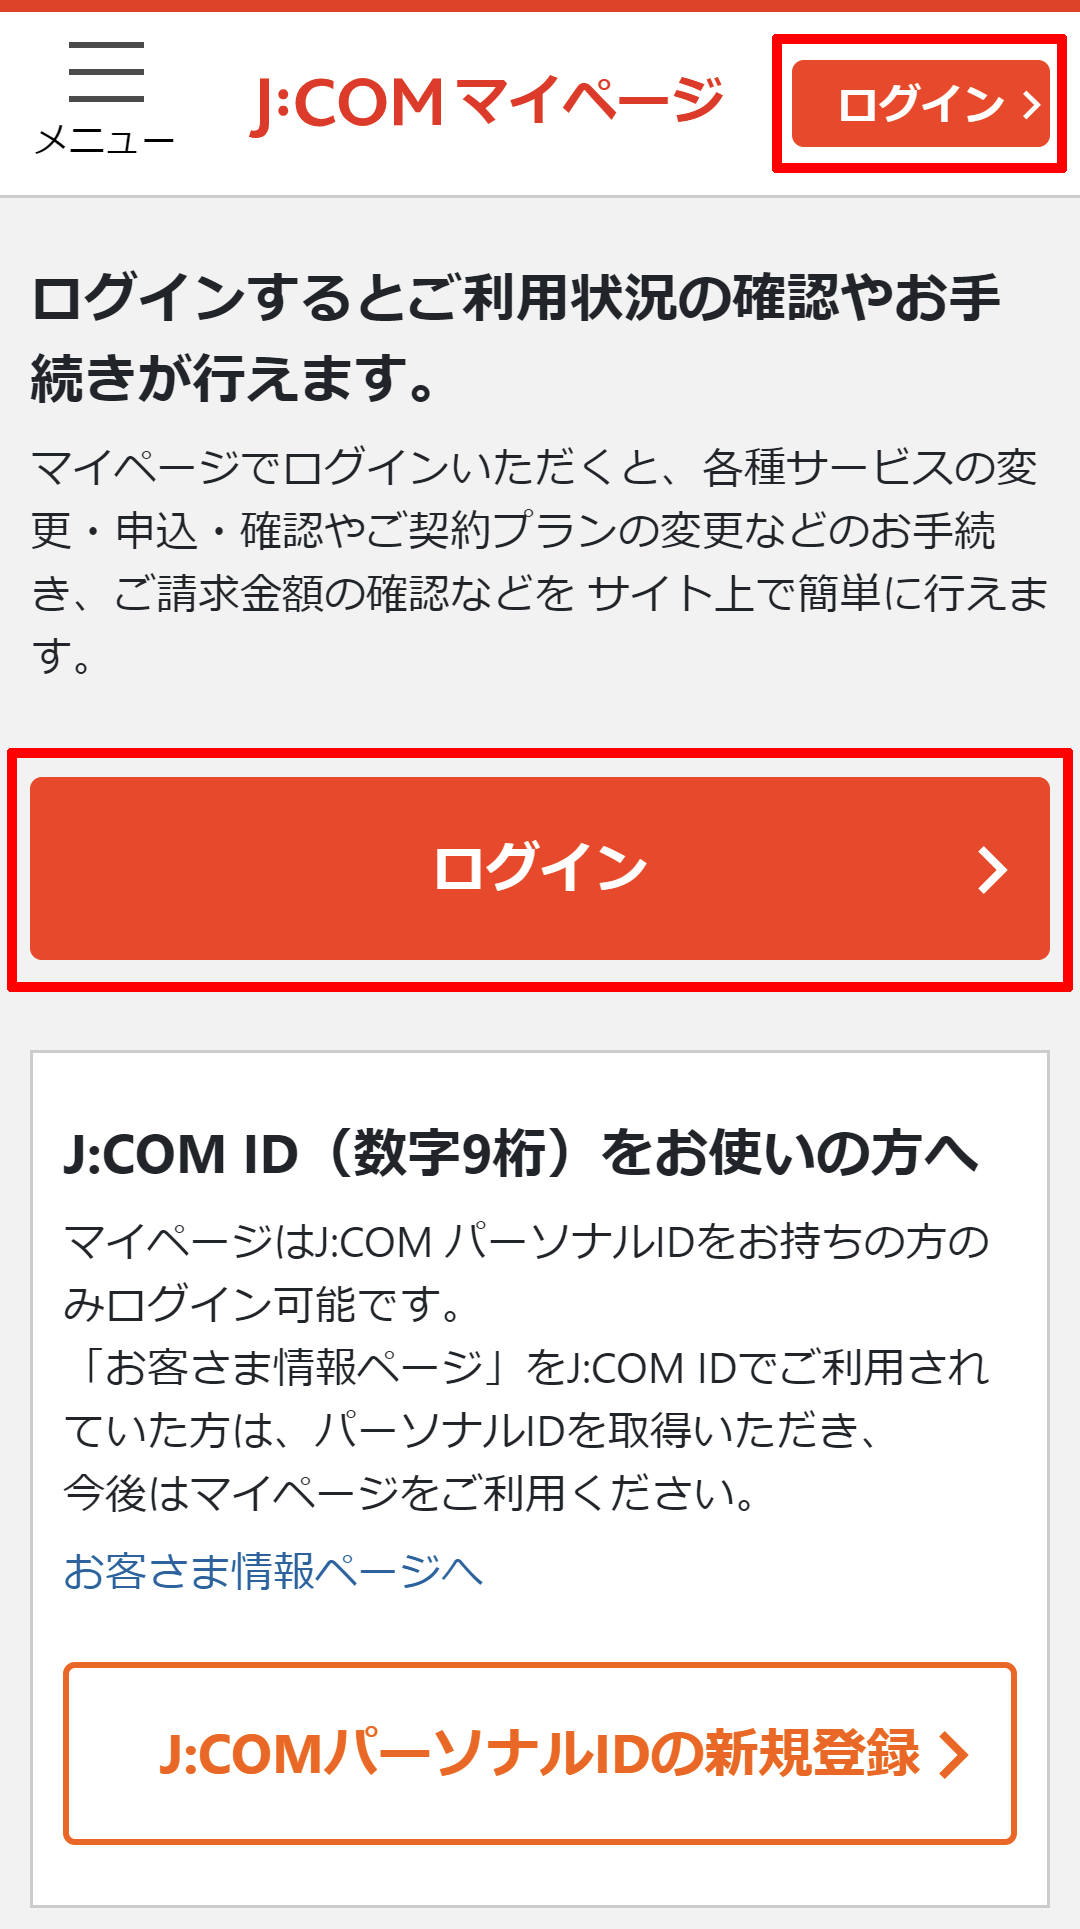 マイページ｜サービス利用状況と契約内容の確認手順を知りたい | JCOMサポート